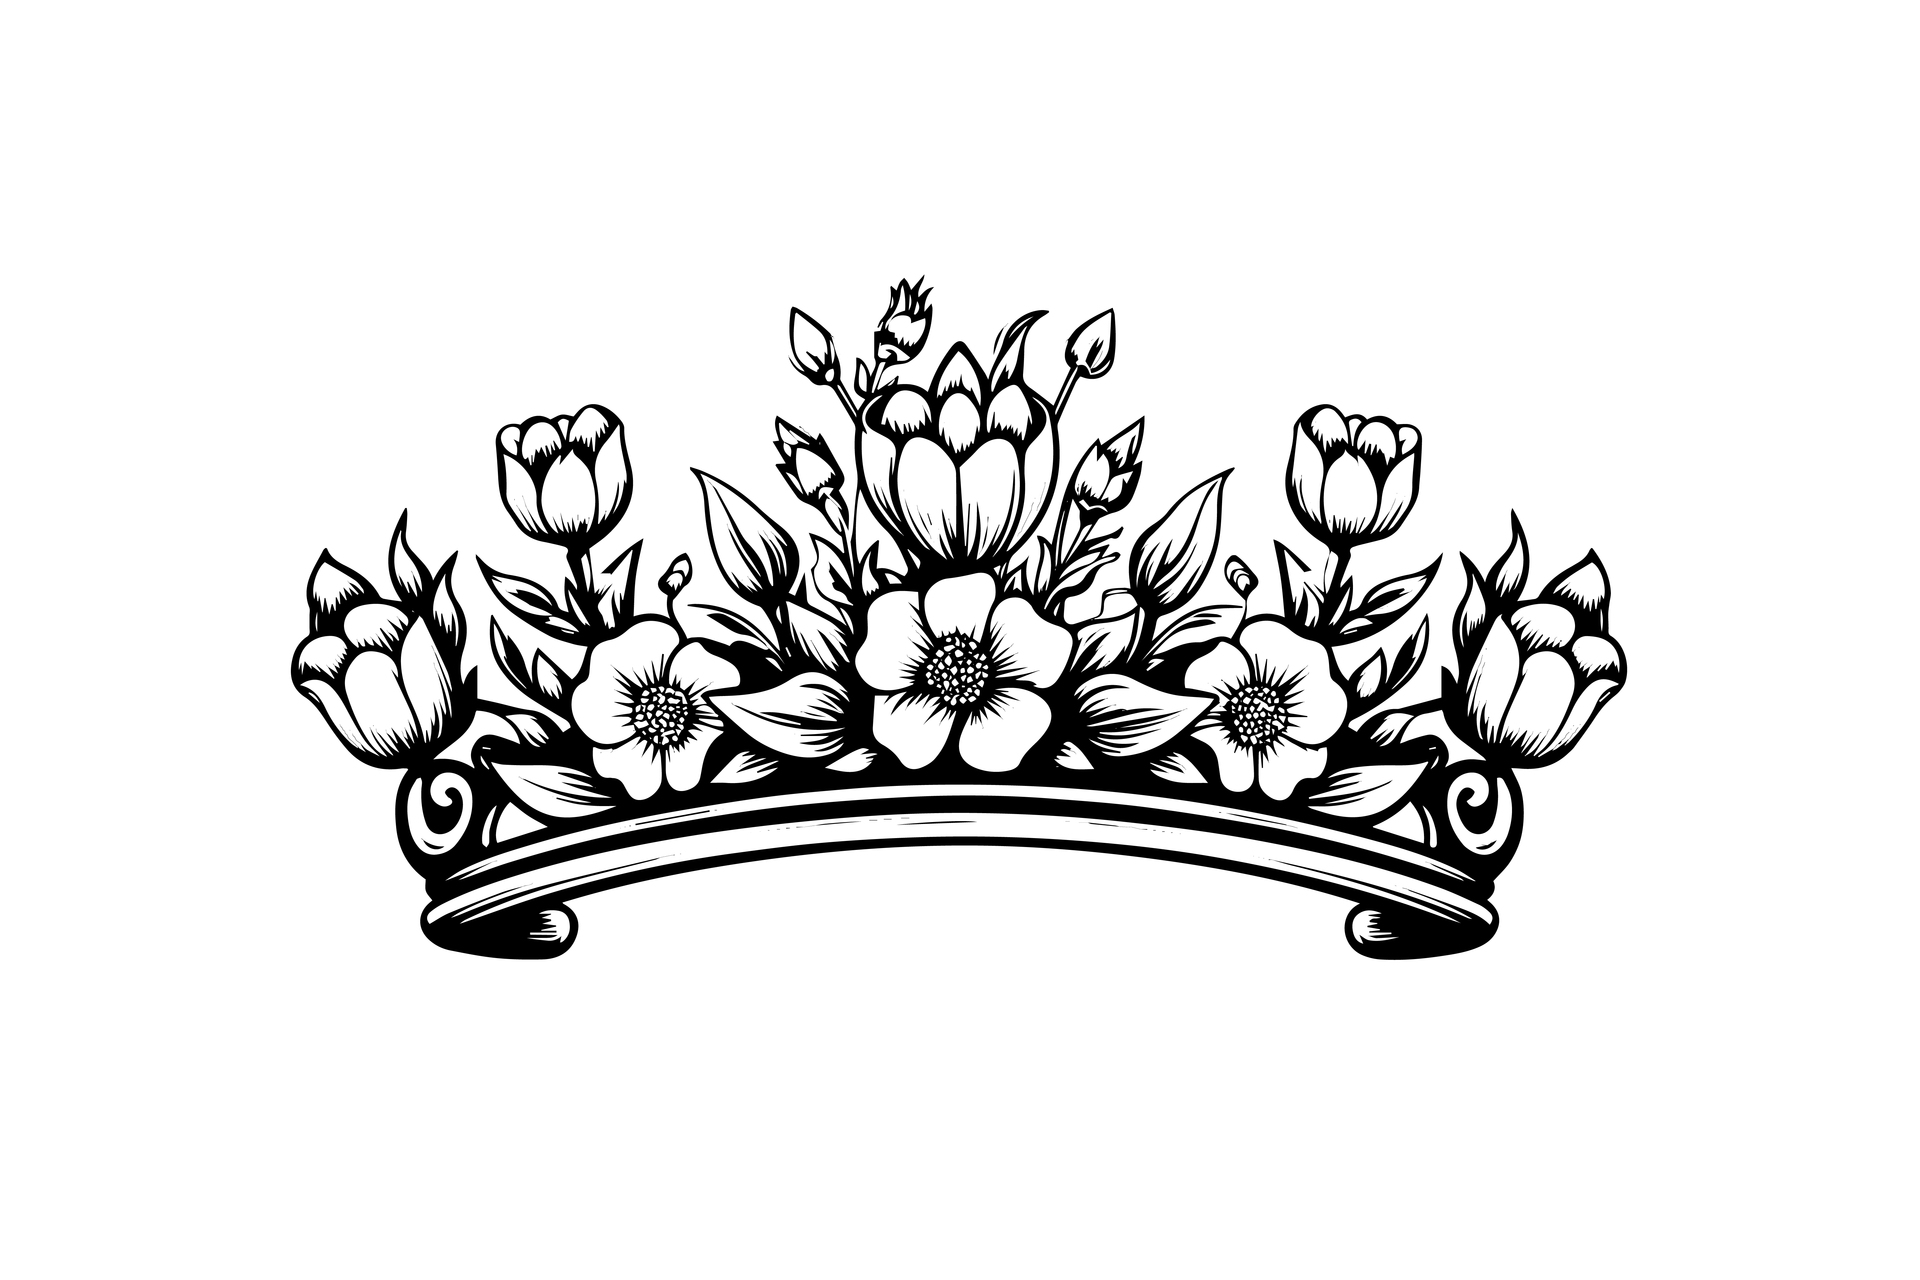 Szkic tatuażu korony. To delikatny i precyzyjny rysunek, który symbolizuje władzę, charyzmę i majestat